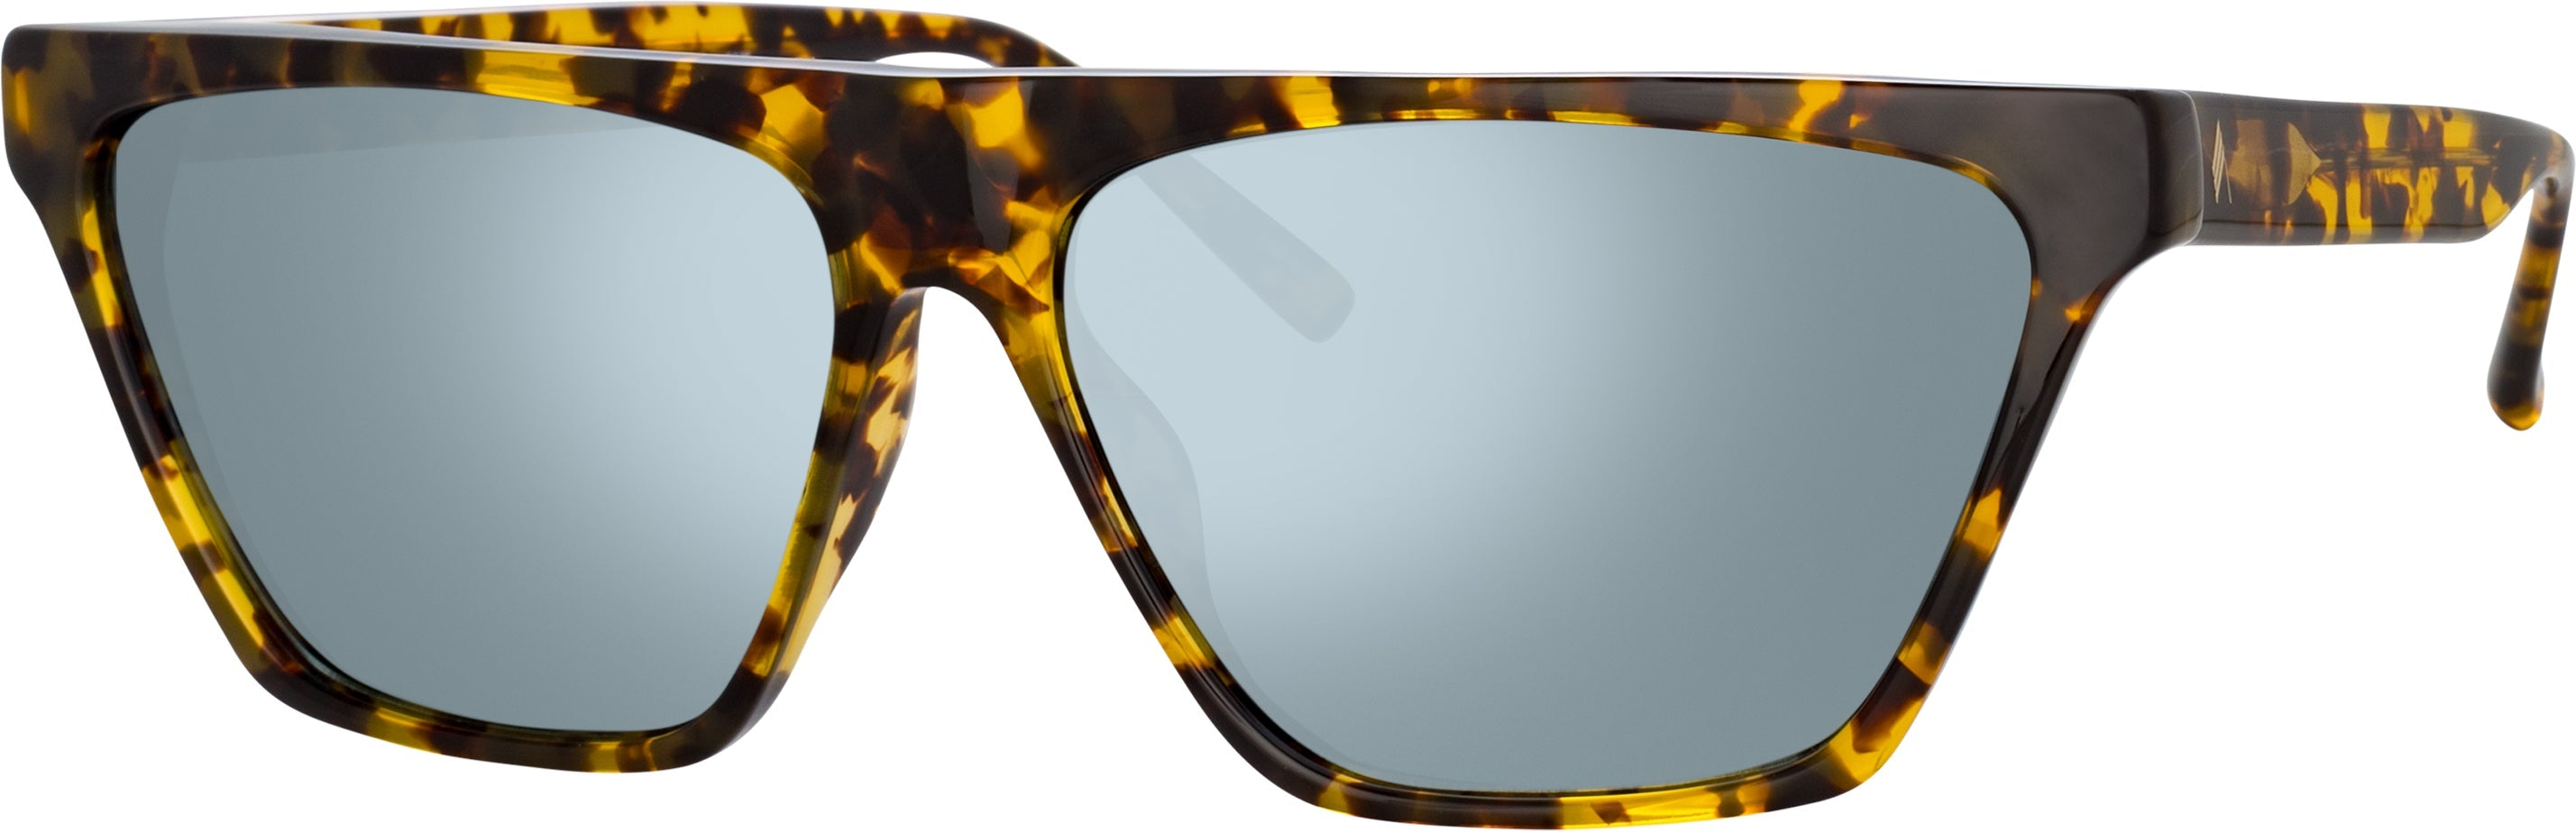 Color_ATTICO19C2SUN - The Attico Erin Flat Top Sunglasses in Tortoiseshell